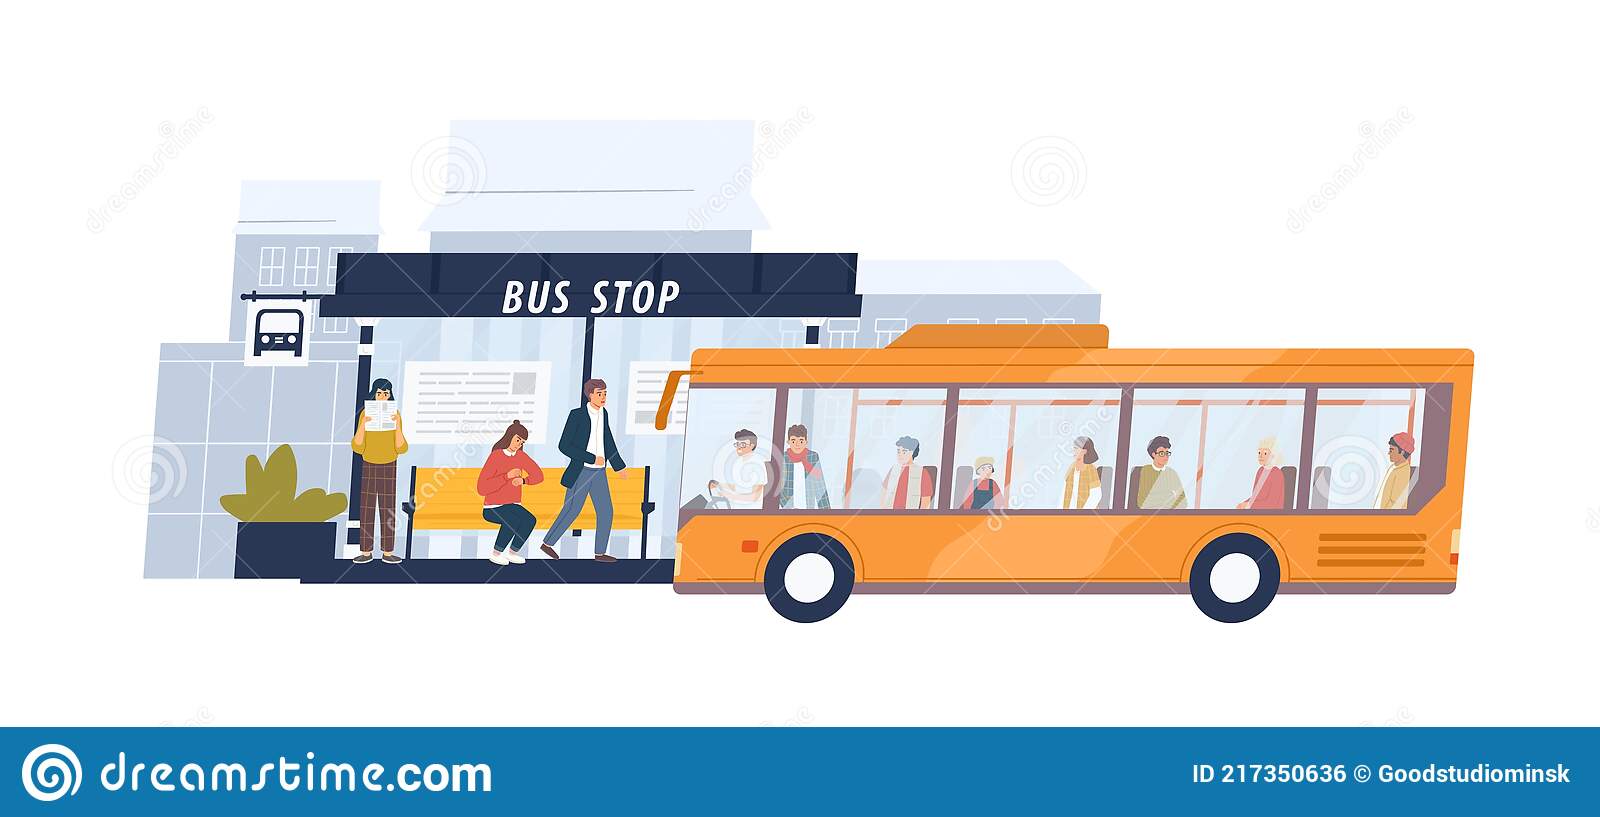 pessoas-esperando-e-chegando-de-ônibus-na-parada-transporte-público-passageiros-estação-municipal-com-horário-serviço-217350636